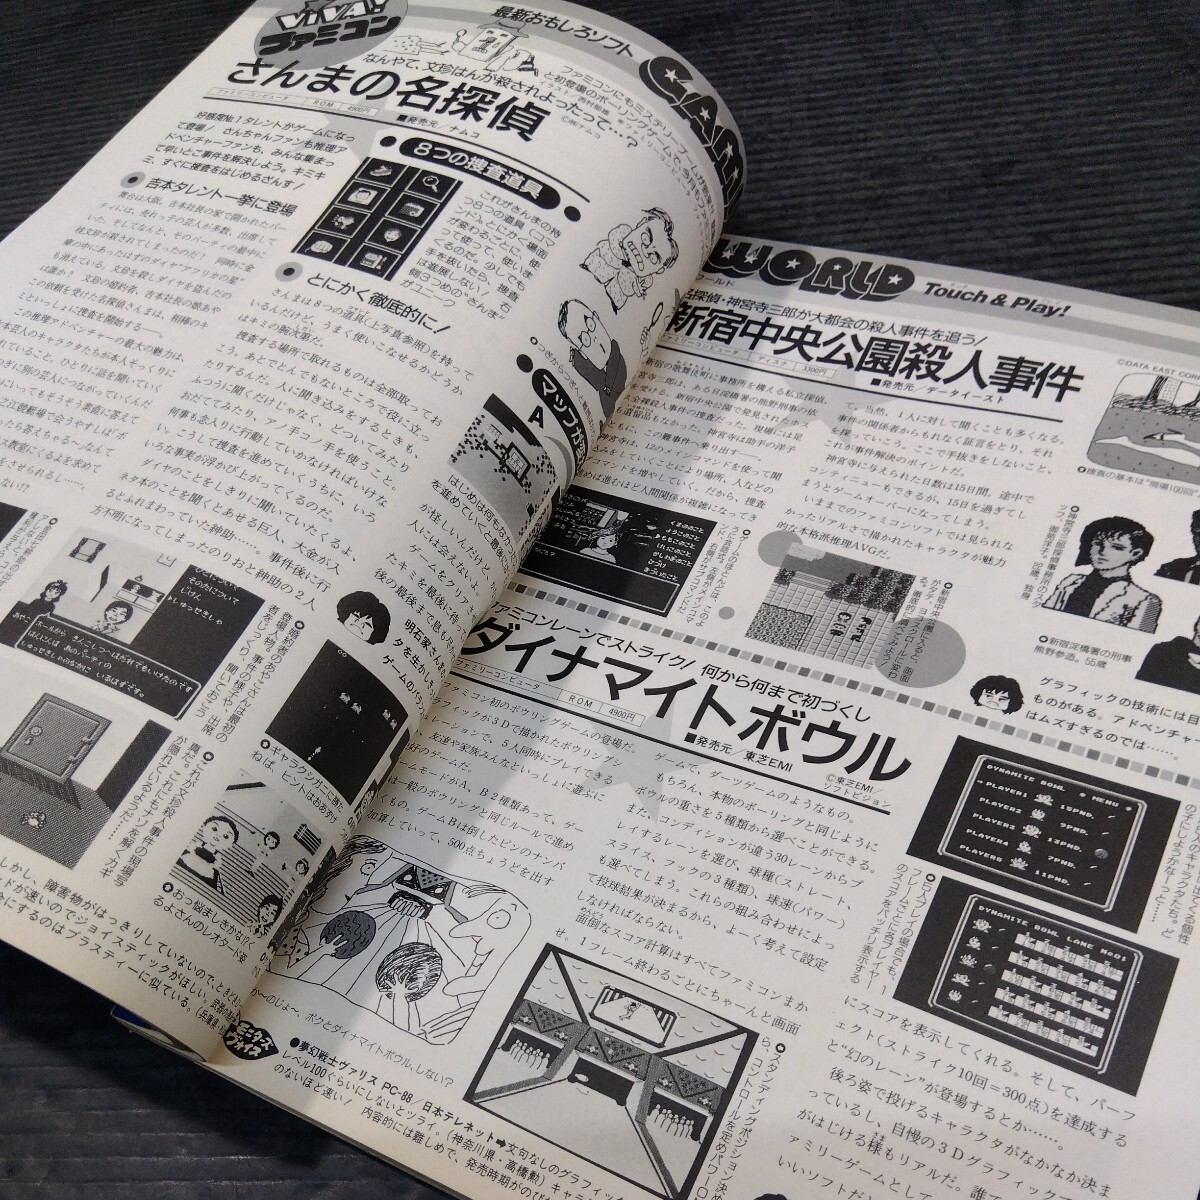 テクノポリス 1987年6月号 徳間書店 PCゲーム雑誌 貴重 月刊 ゲーム 情報誌 レトロ本 シミュレーションゲーム特集 MSX おすすめ ソフト